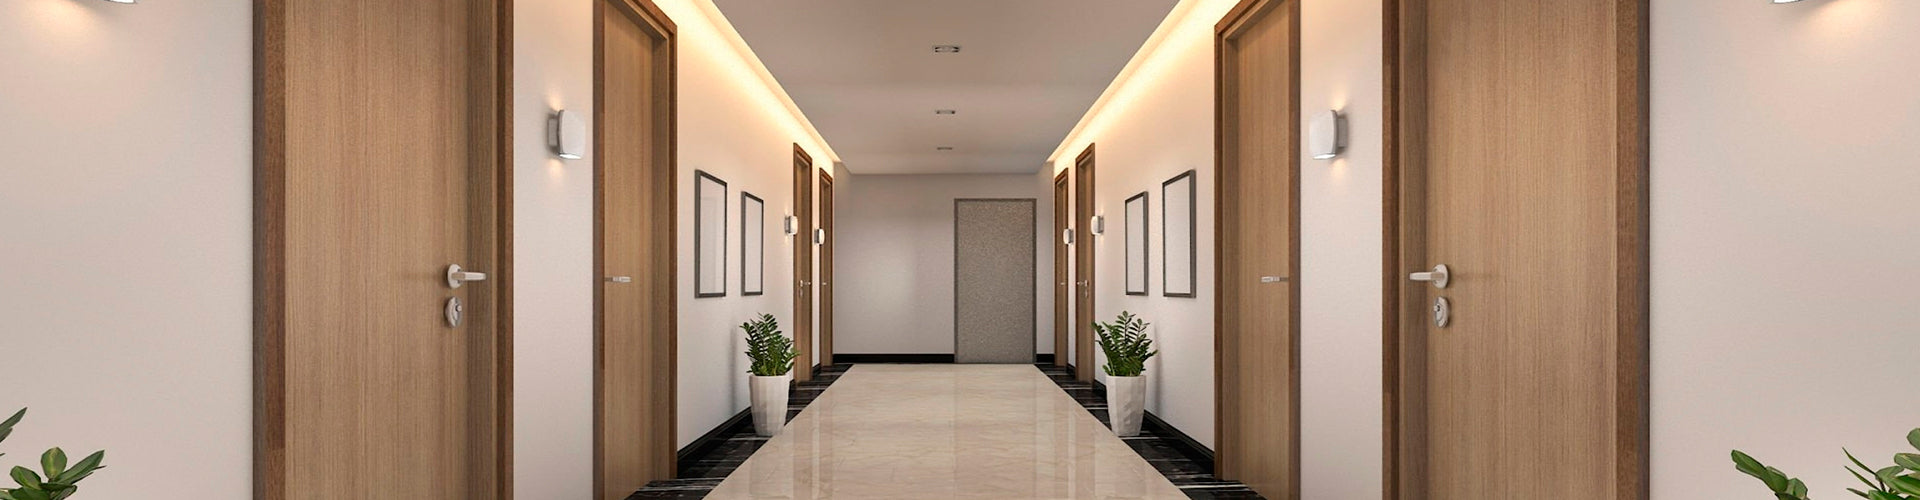 Tipos de puertas acorazadas usadas en edificios residenciales